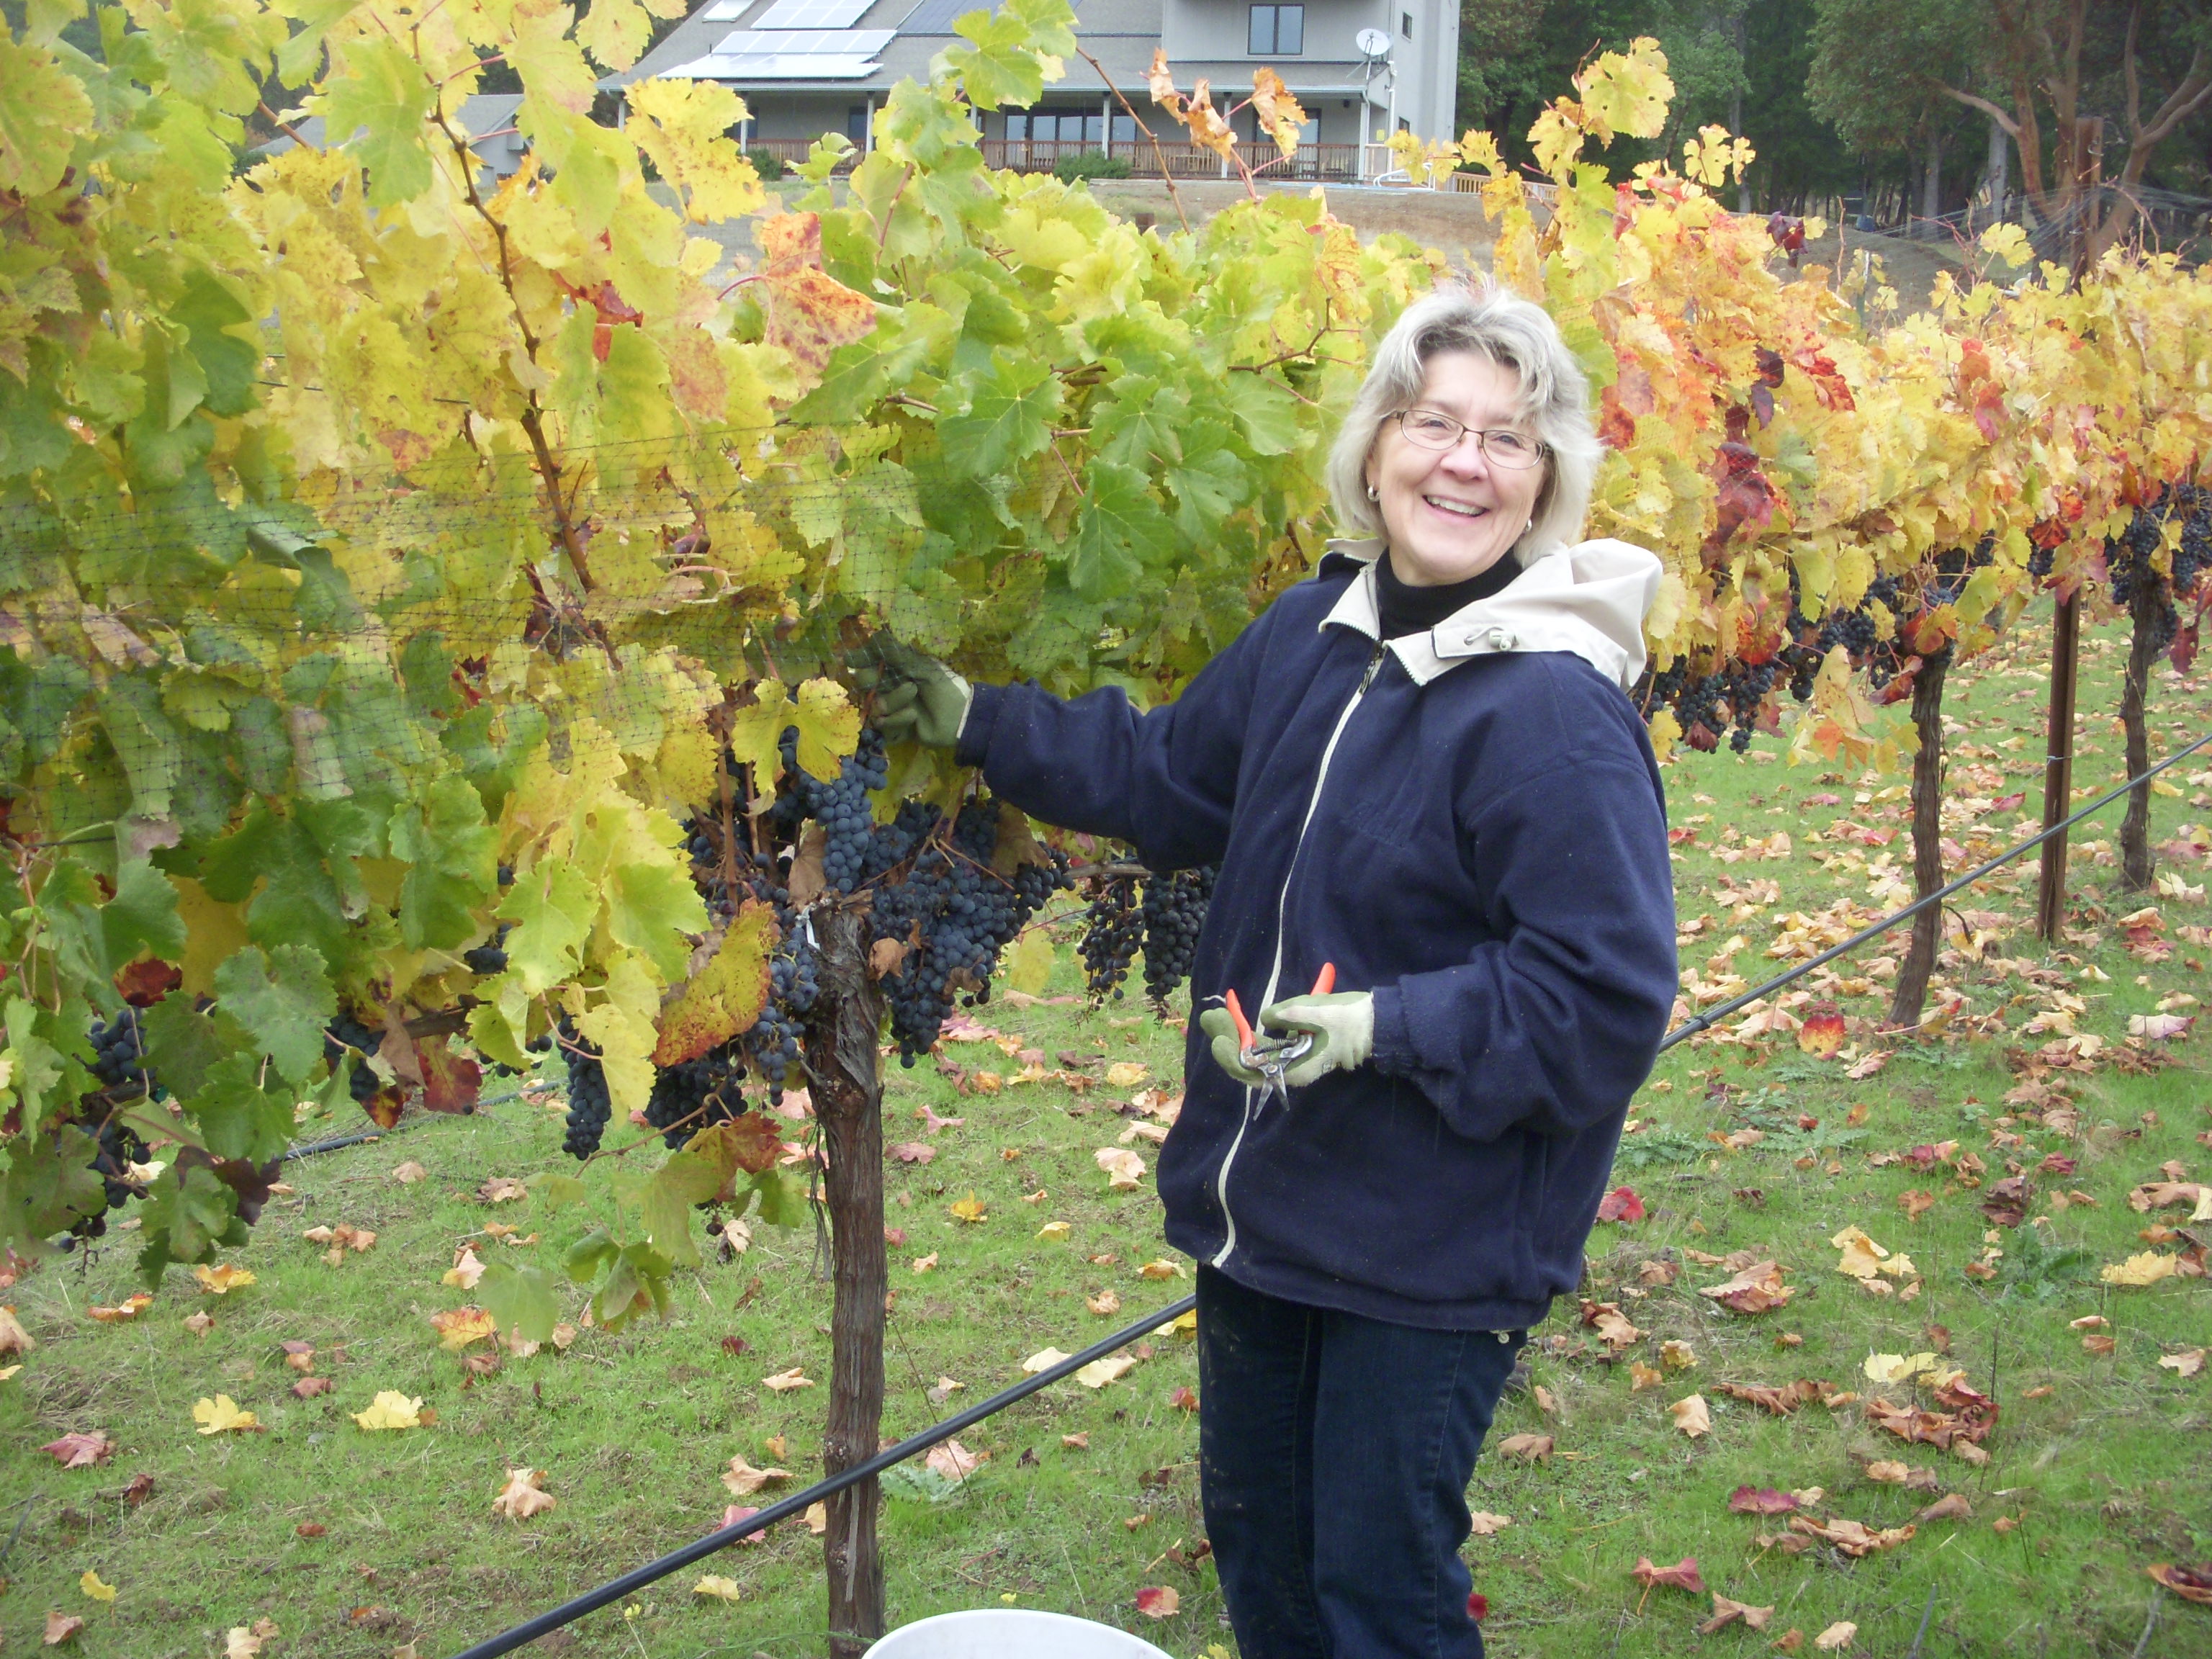 Ann Marie picking grapes